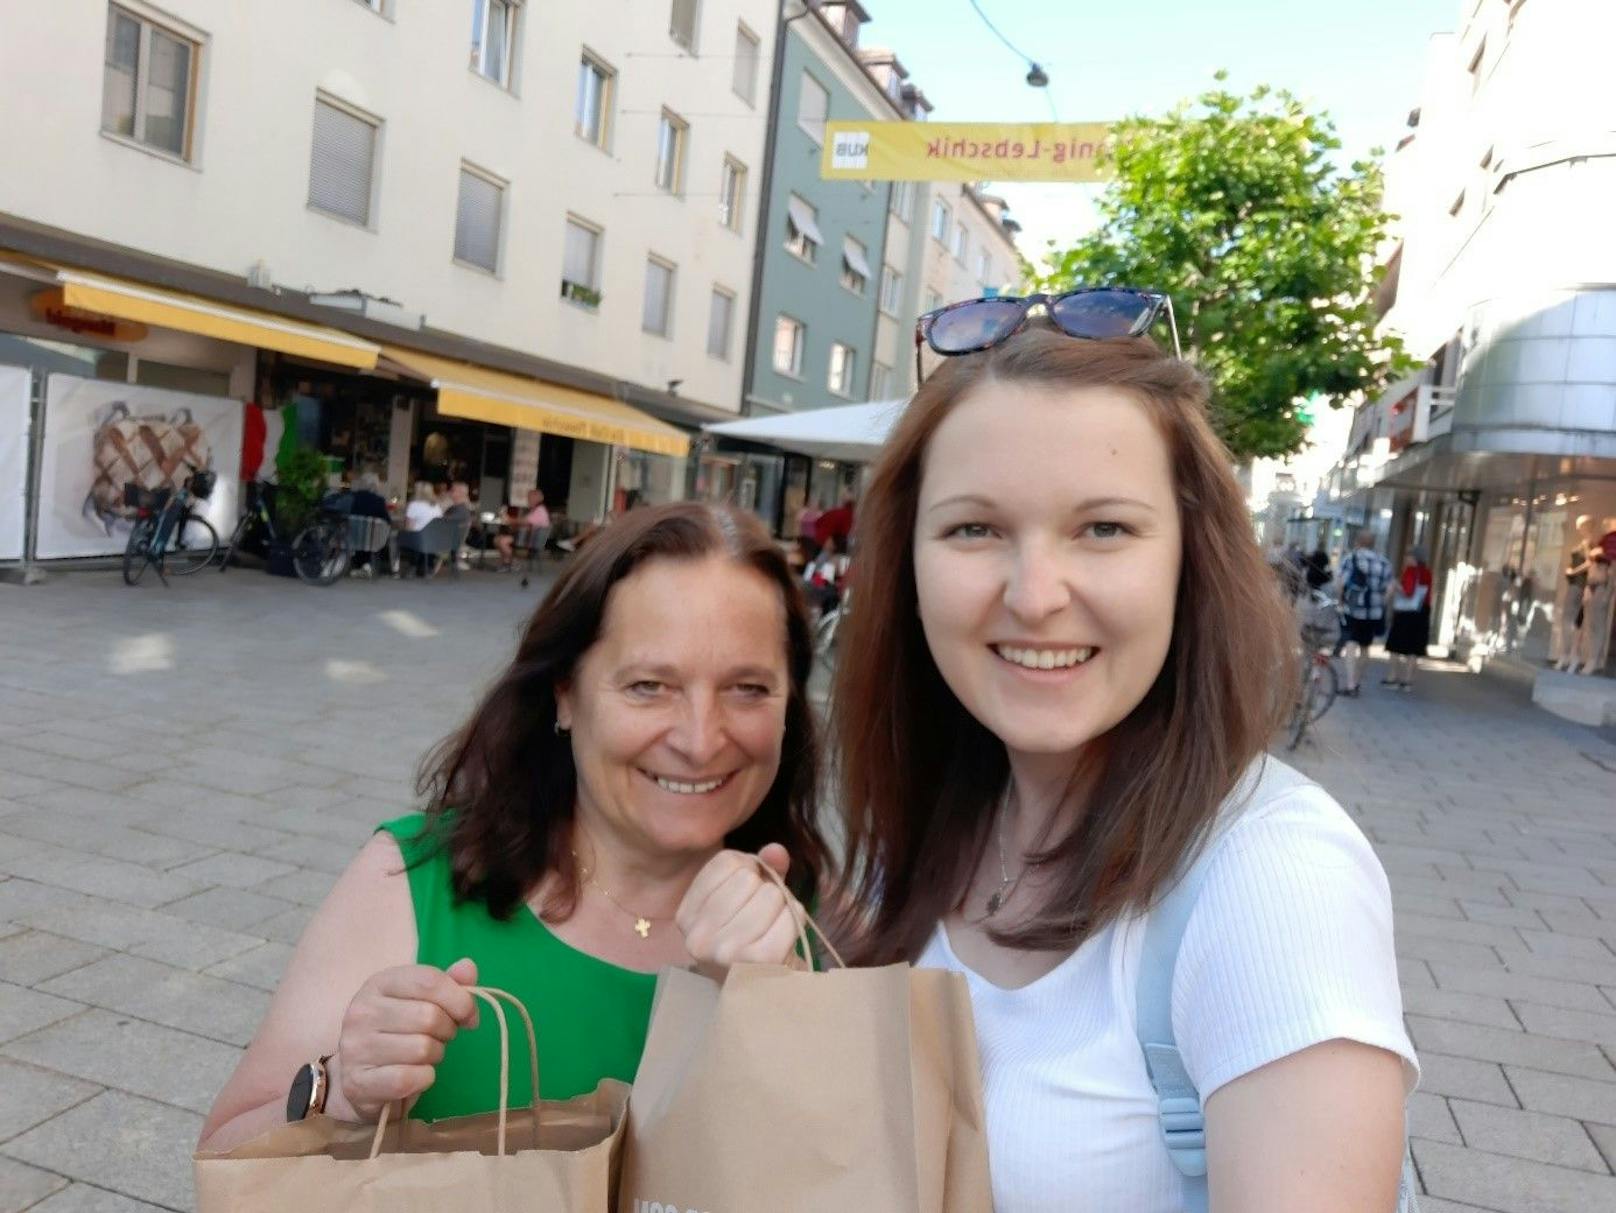 Susanne und Emma beim Shoppen in der Bregenzer Innenstadt (Kaiserstraße)